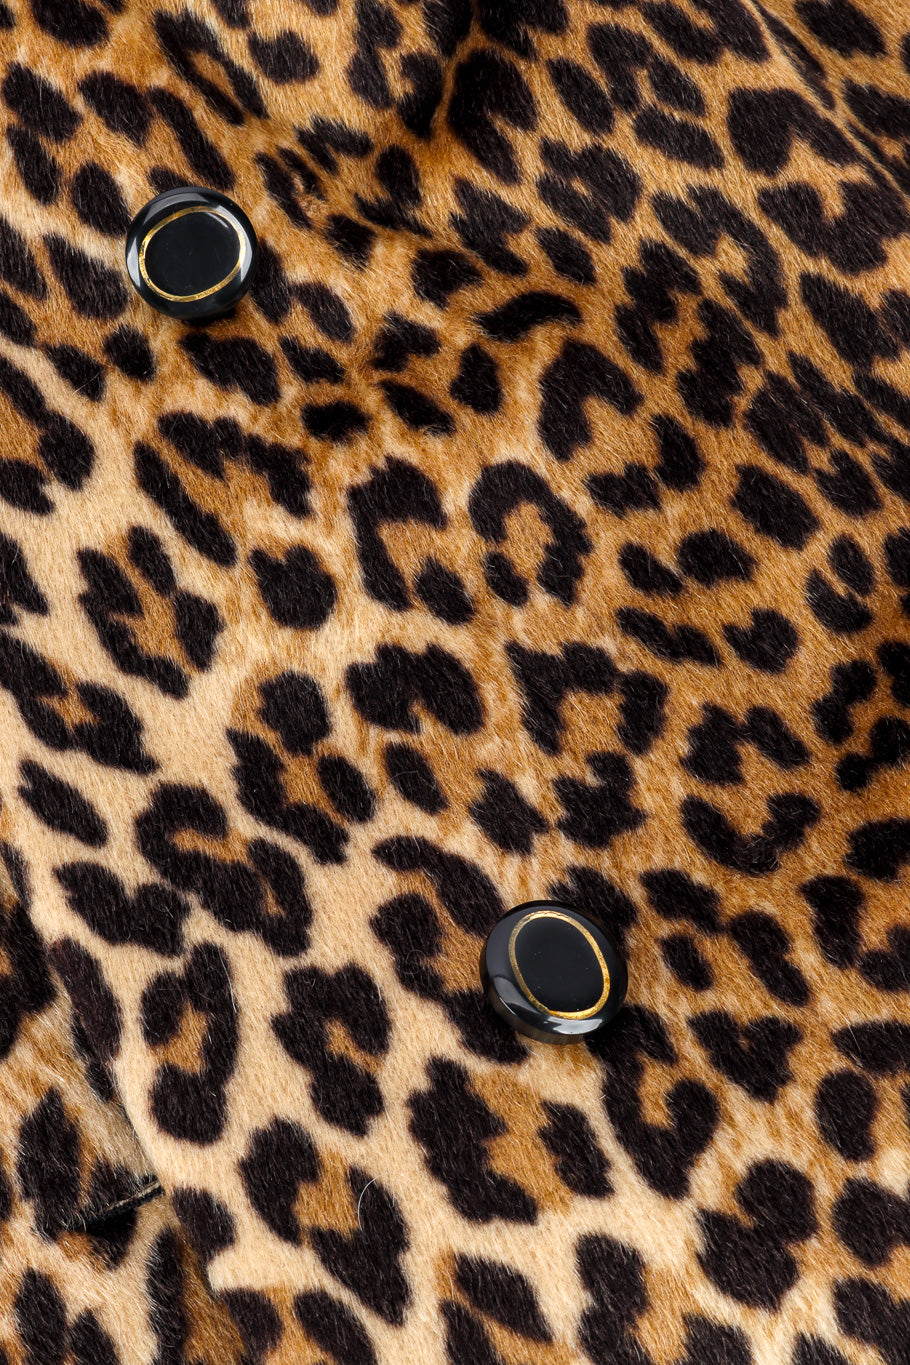 Vintage Marcus Leopard Print Jacket front button closeup @recessla